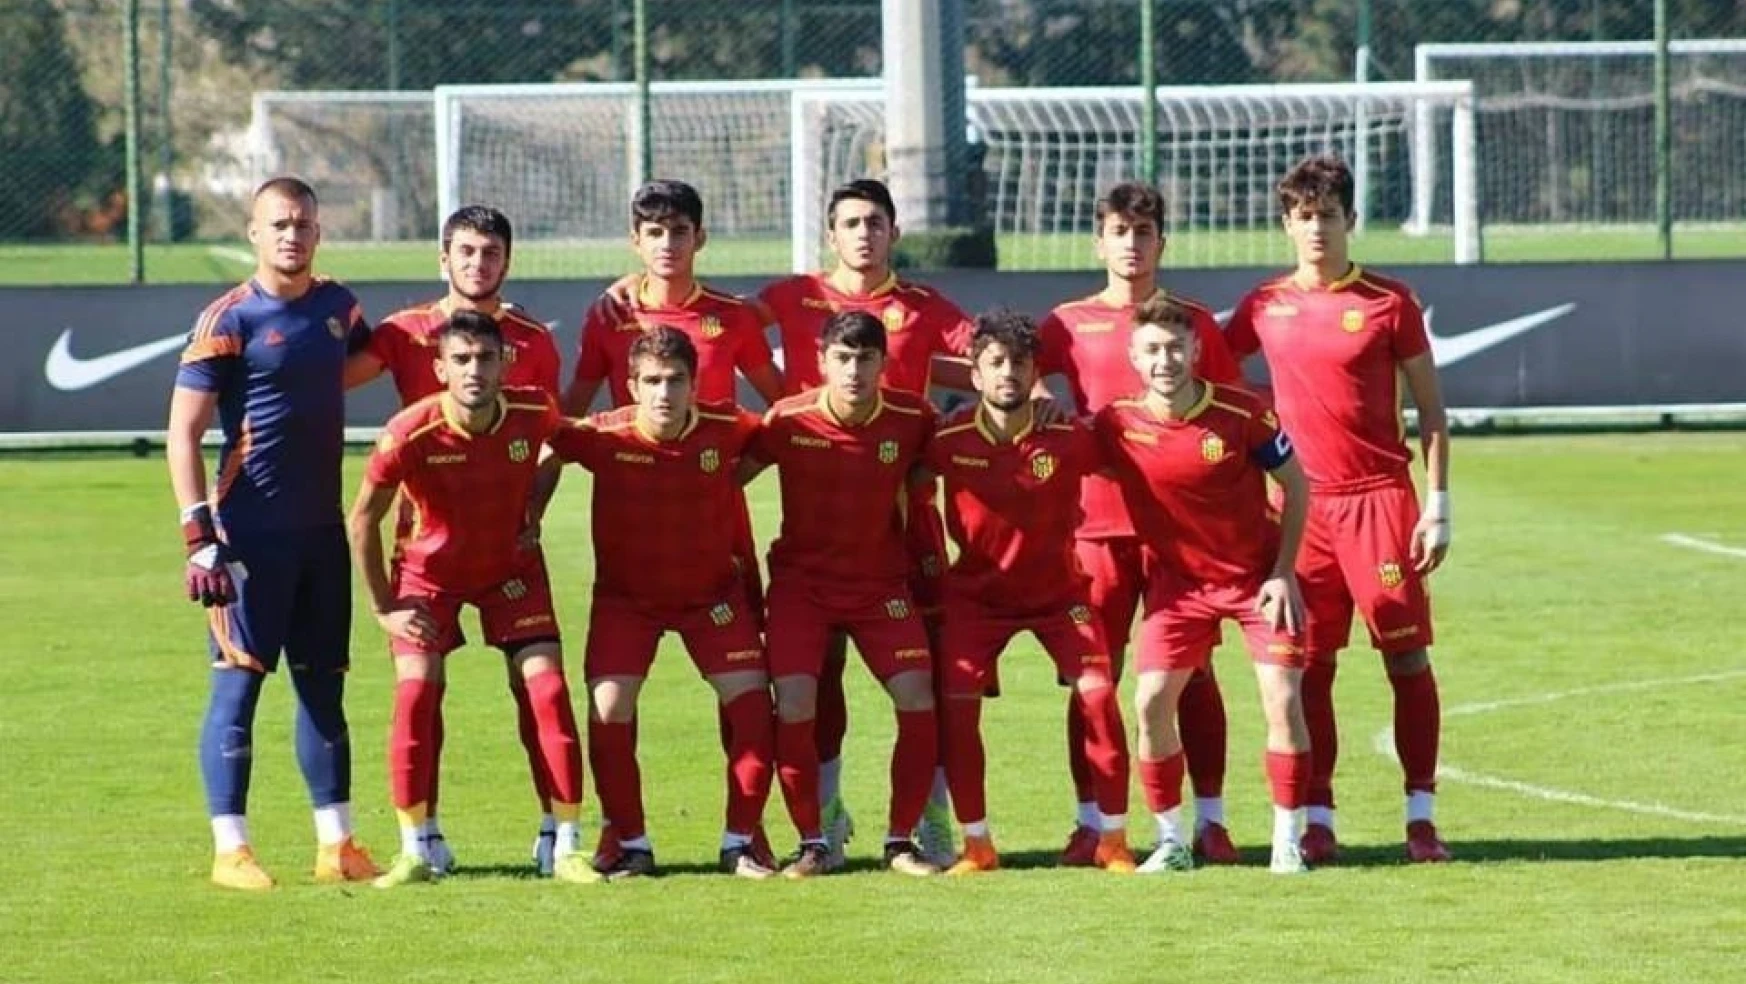 E.Y. Malatyaspor Elit Lig U17'de çıkışını sürdürüyor